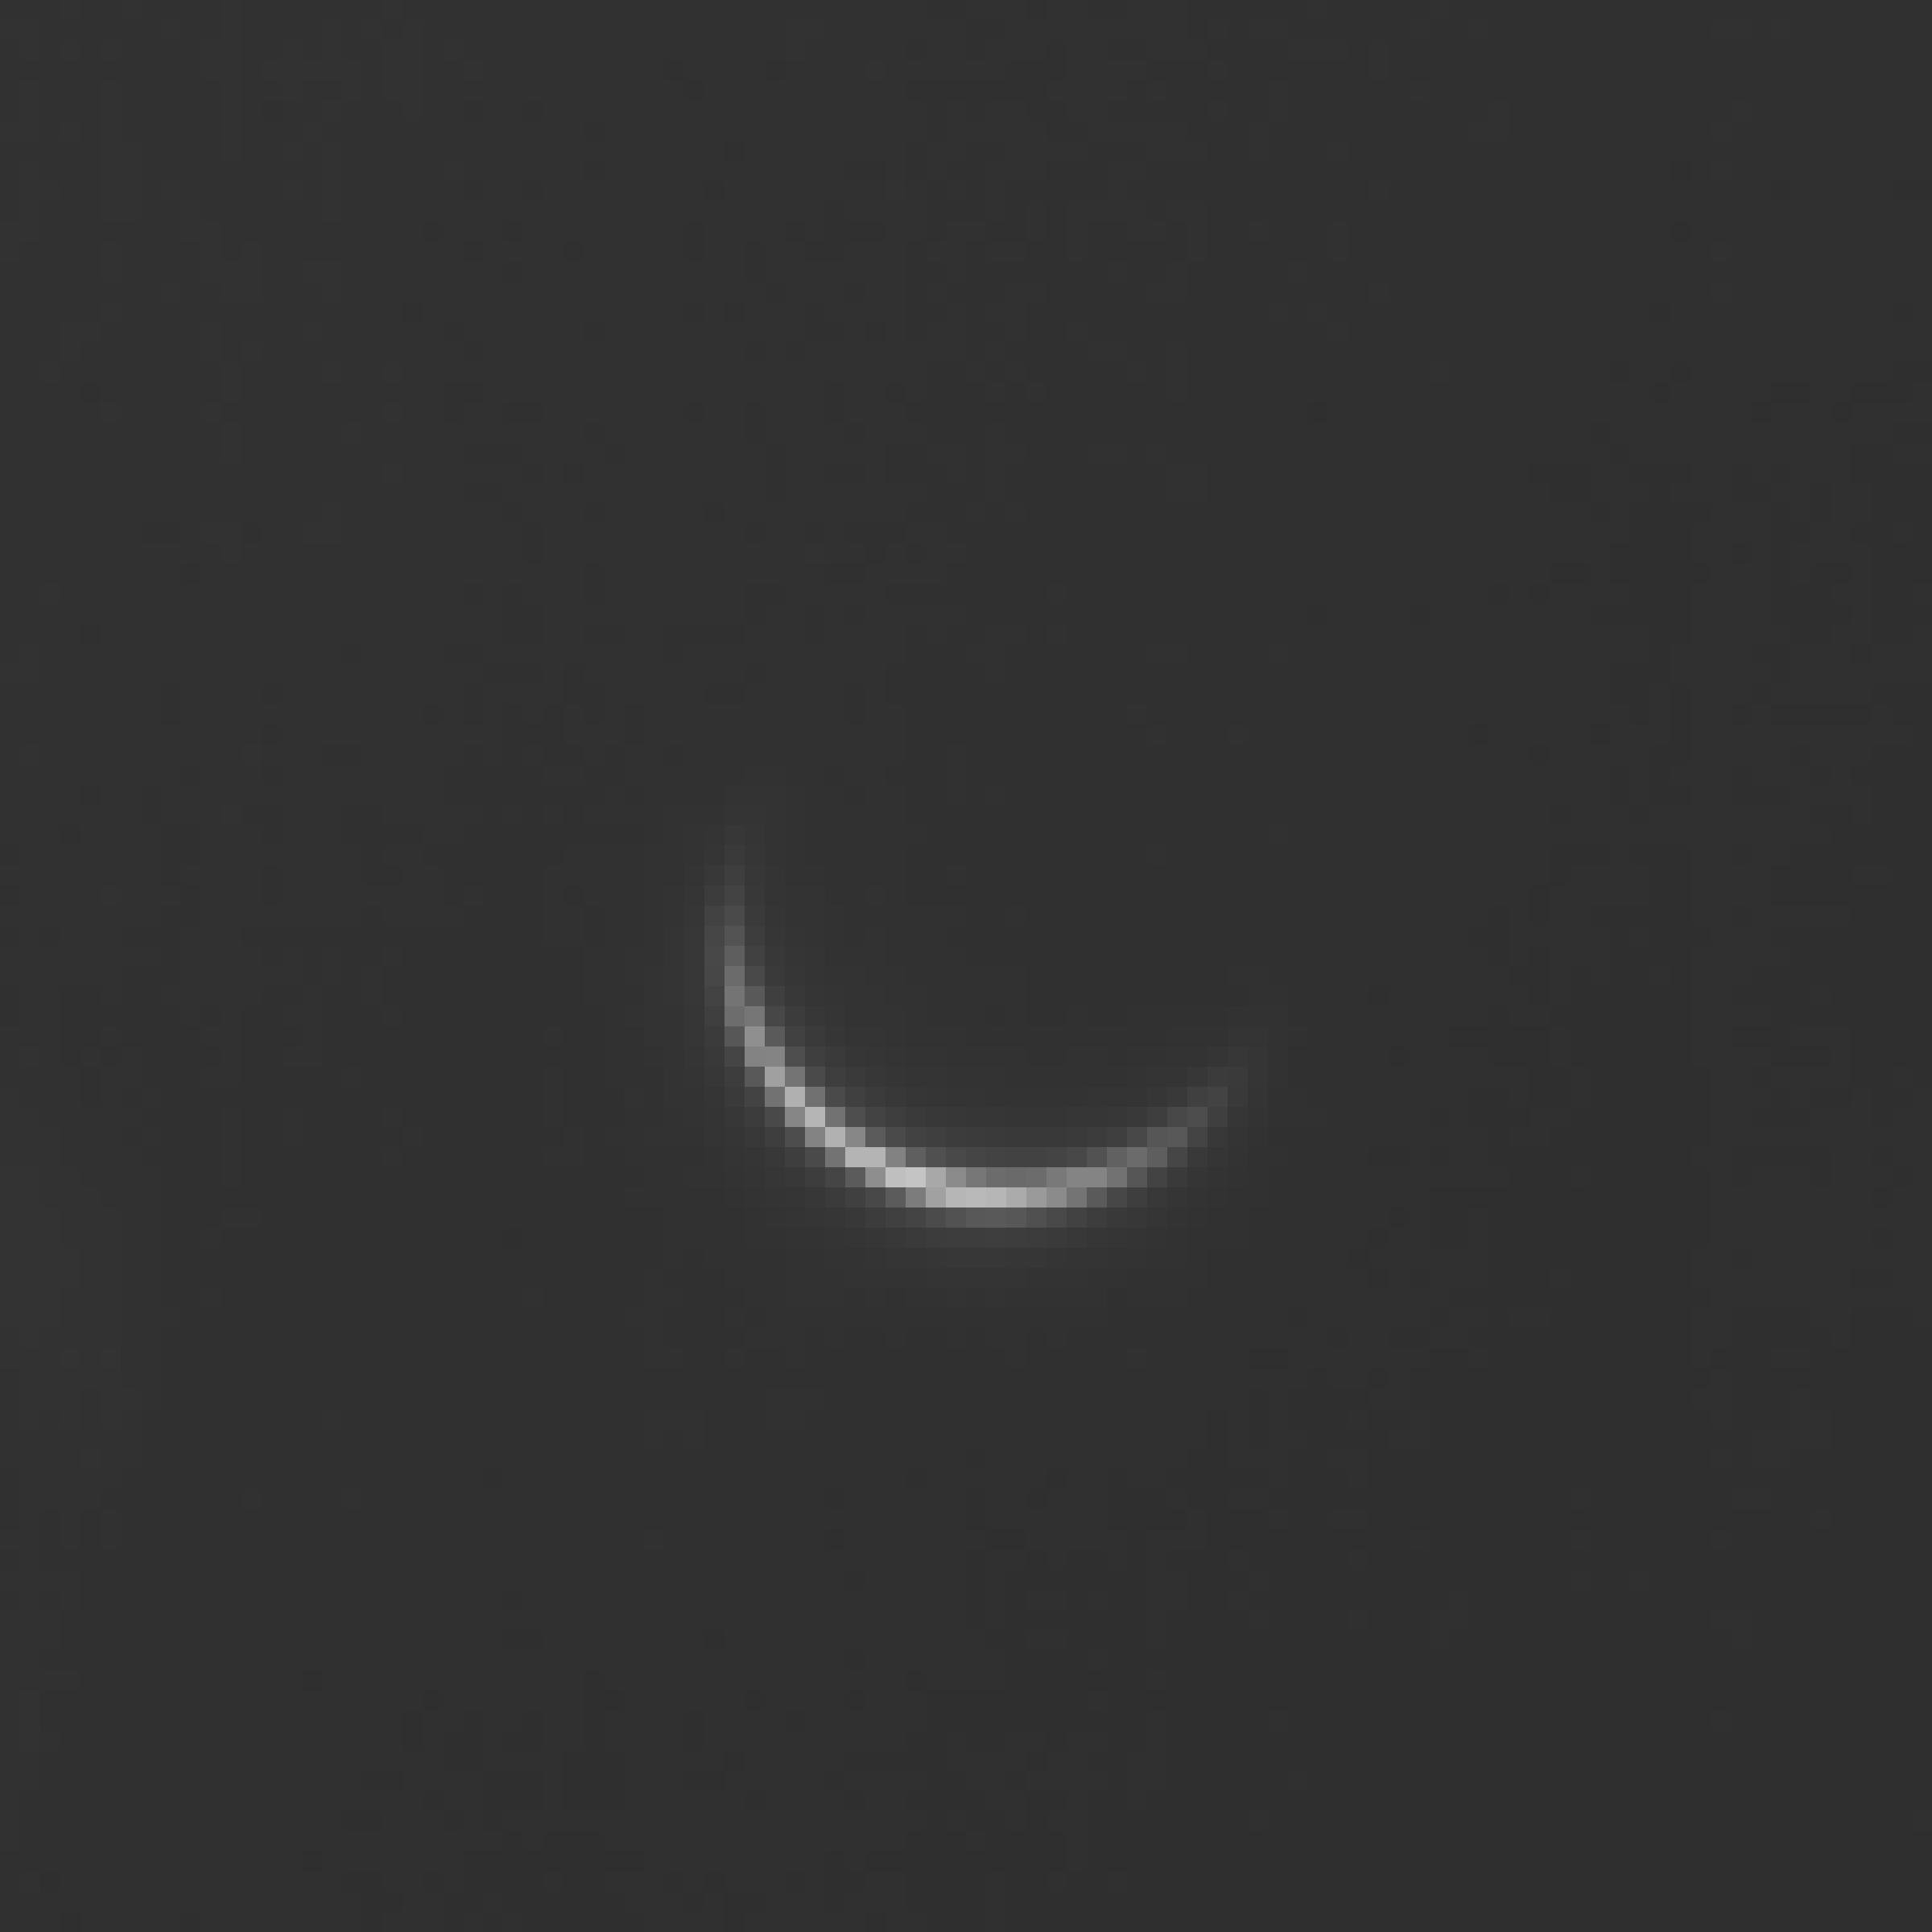 Sehr schmale Venusssichel aufgenommen von Sven Melchert am Tag der unteren Konjunktion, 25.3.2017.